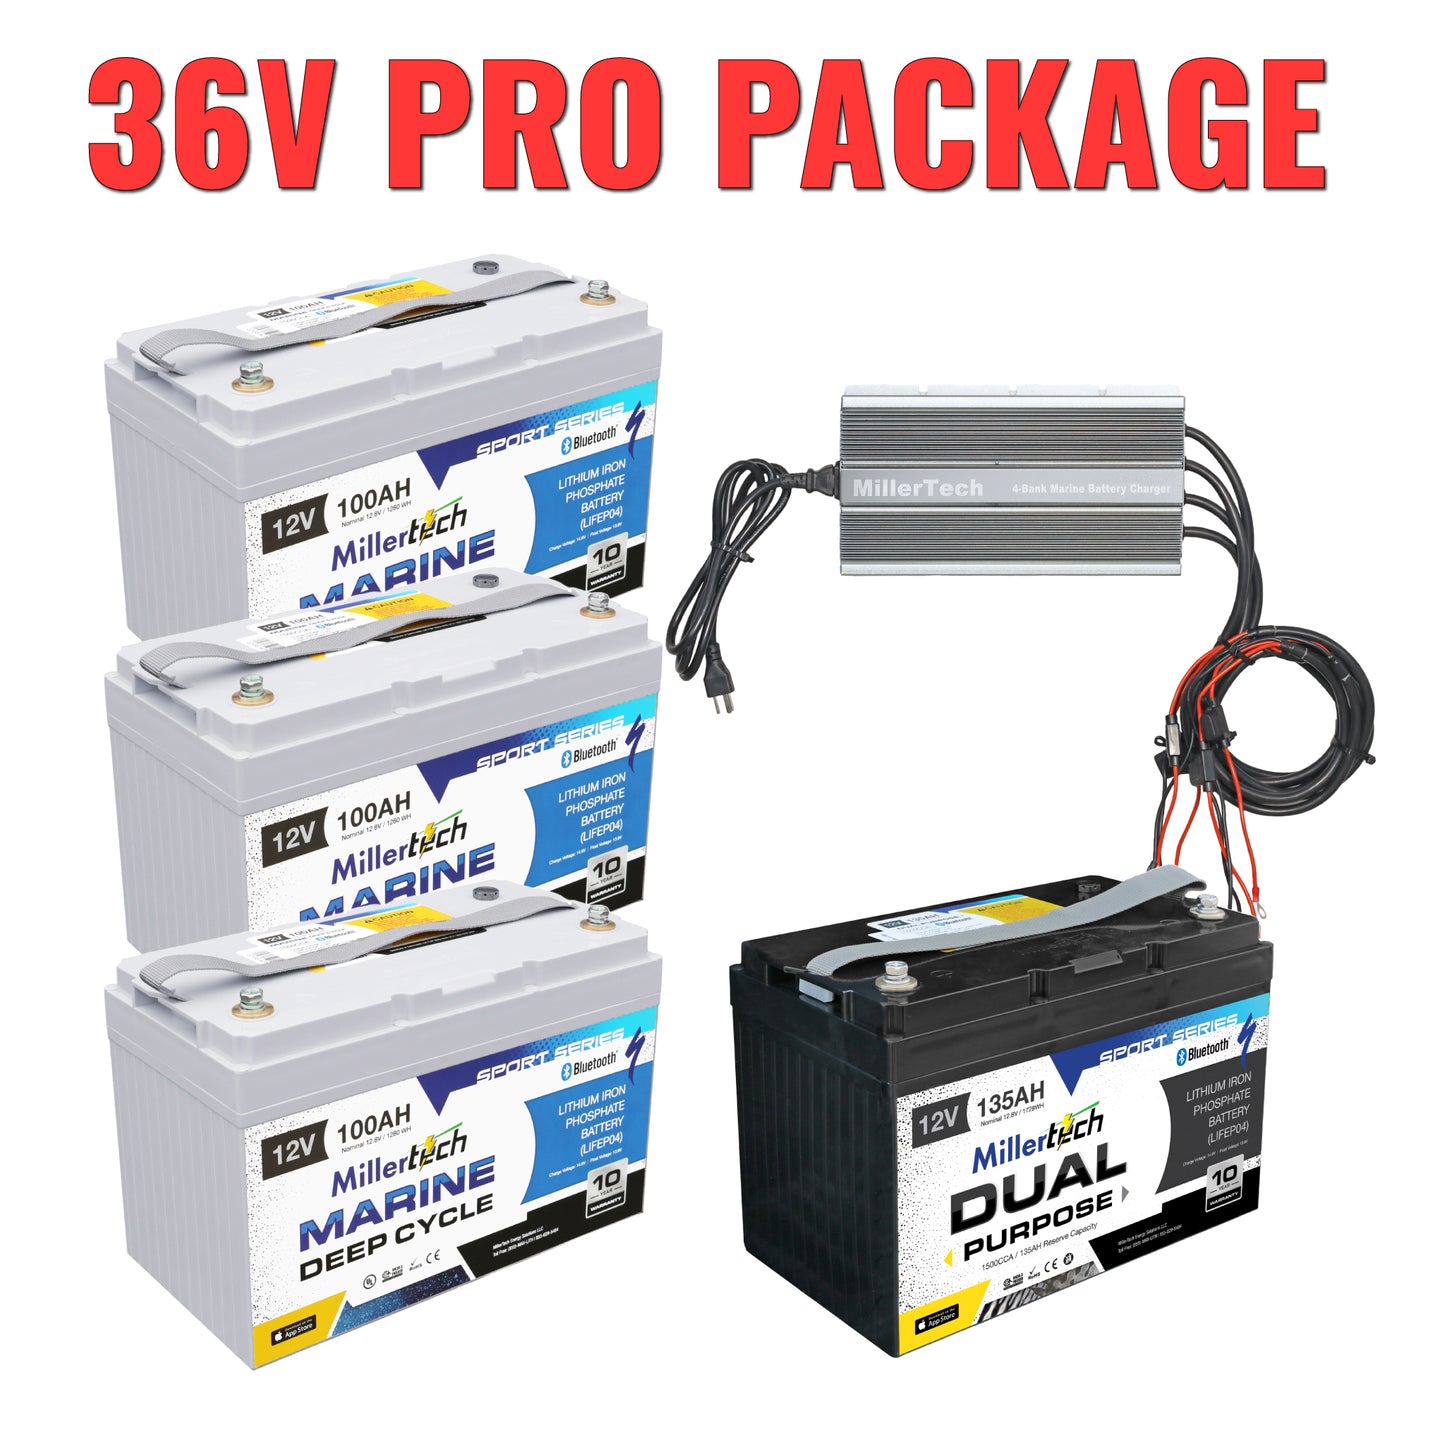 36V Pro Package